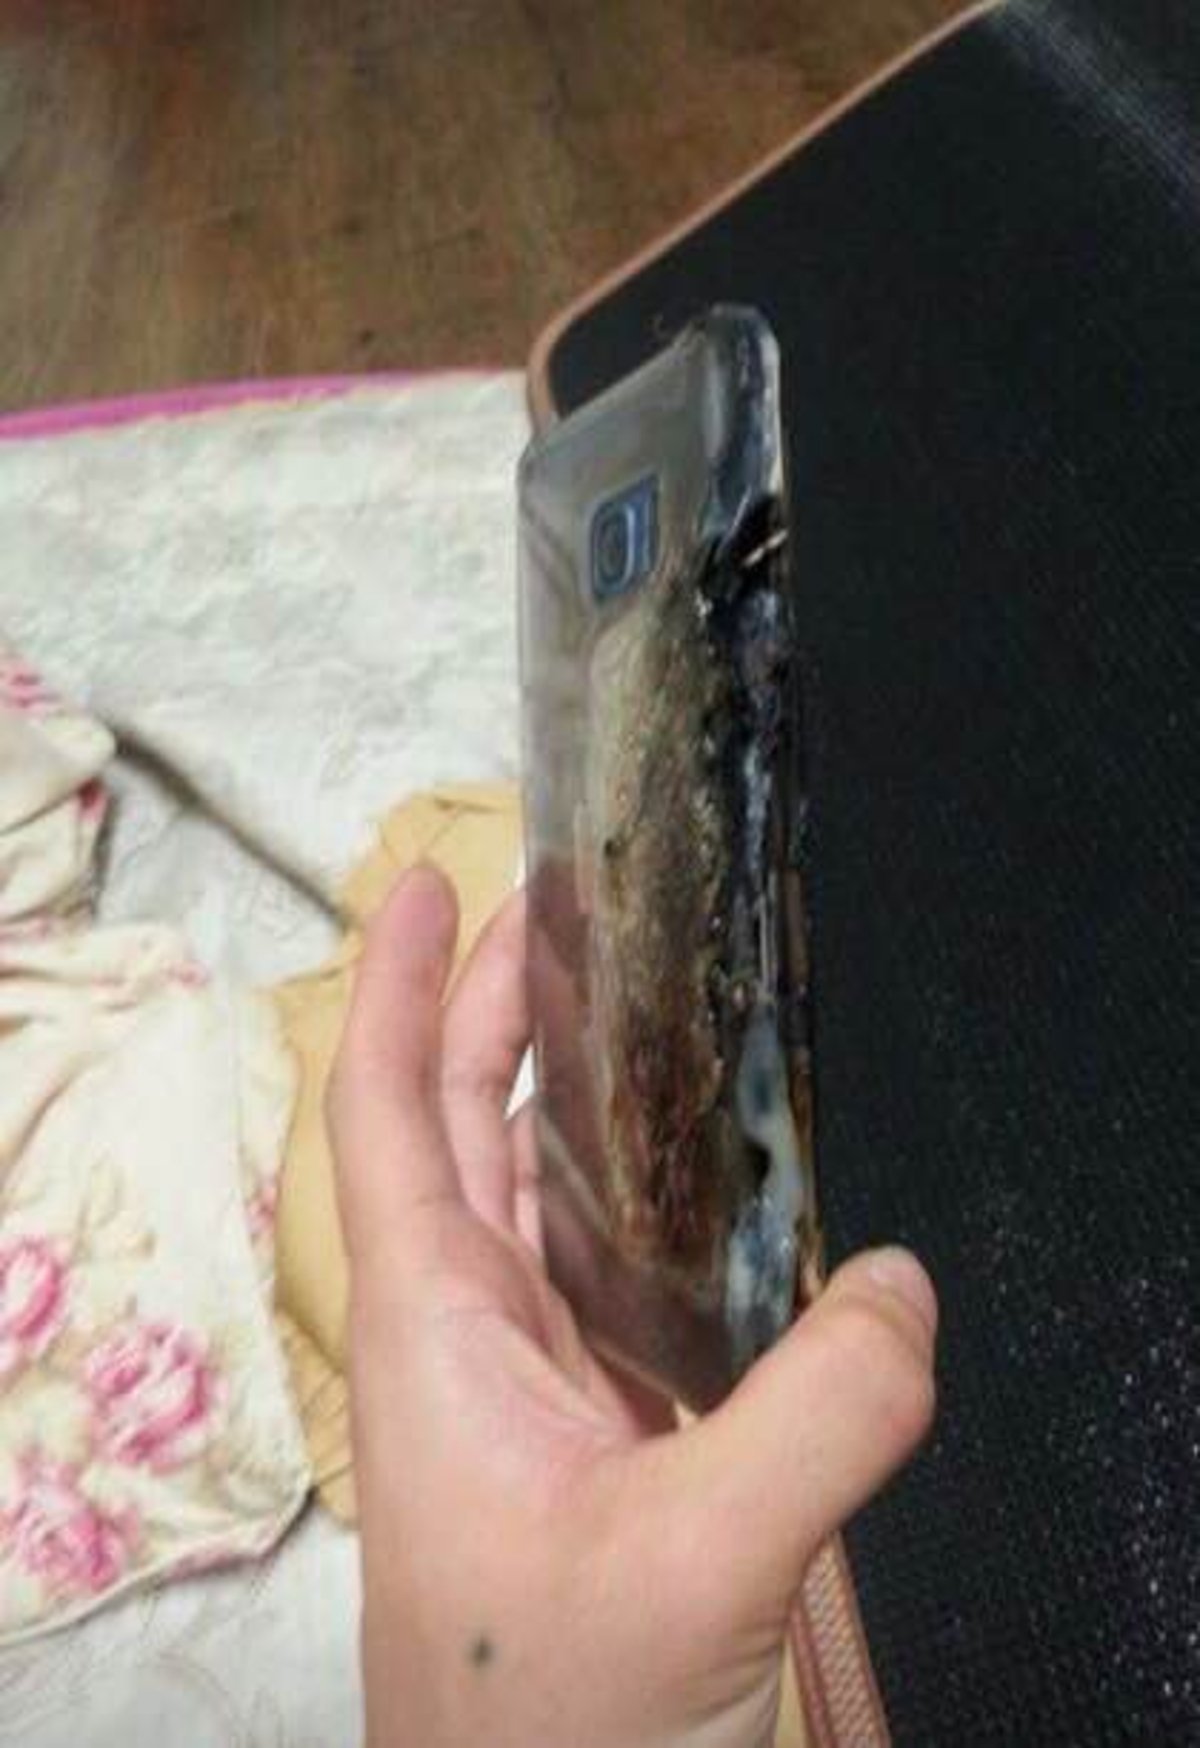 Un Samsung Galaxy Note7 explota durante la carga, ¡mira las imágenes de cómo ha quedado!